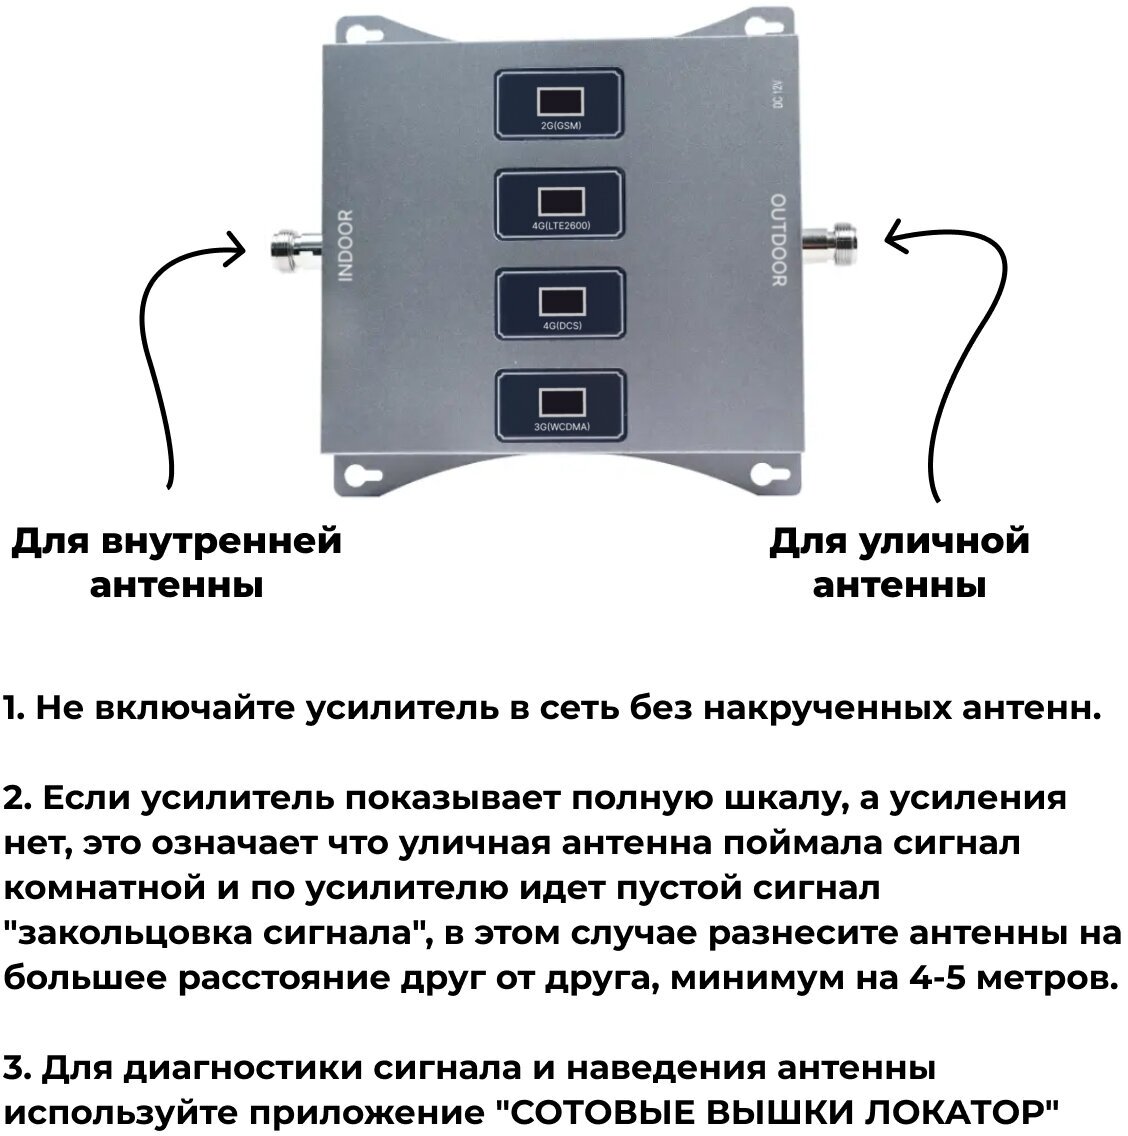 Усилитель сигнала сотовой связи 2G/3G/4G - Комплект Telestone 900/1800/2100/2600 Гц